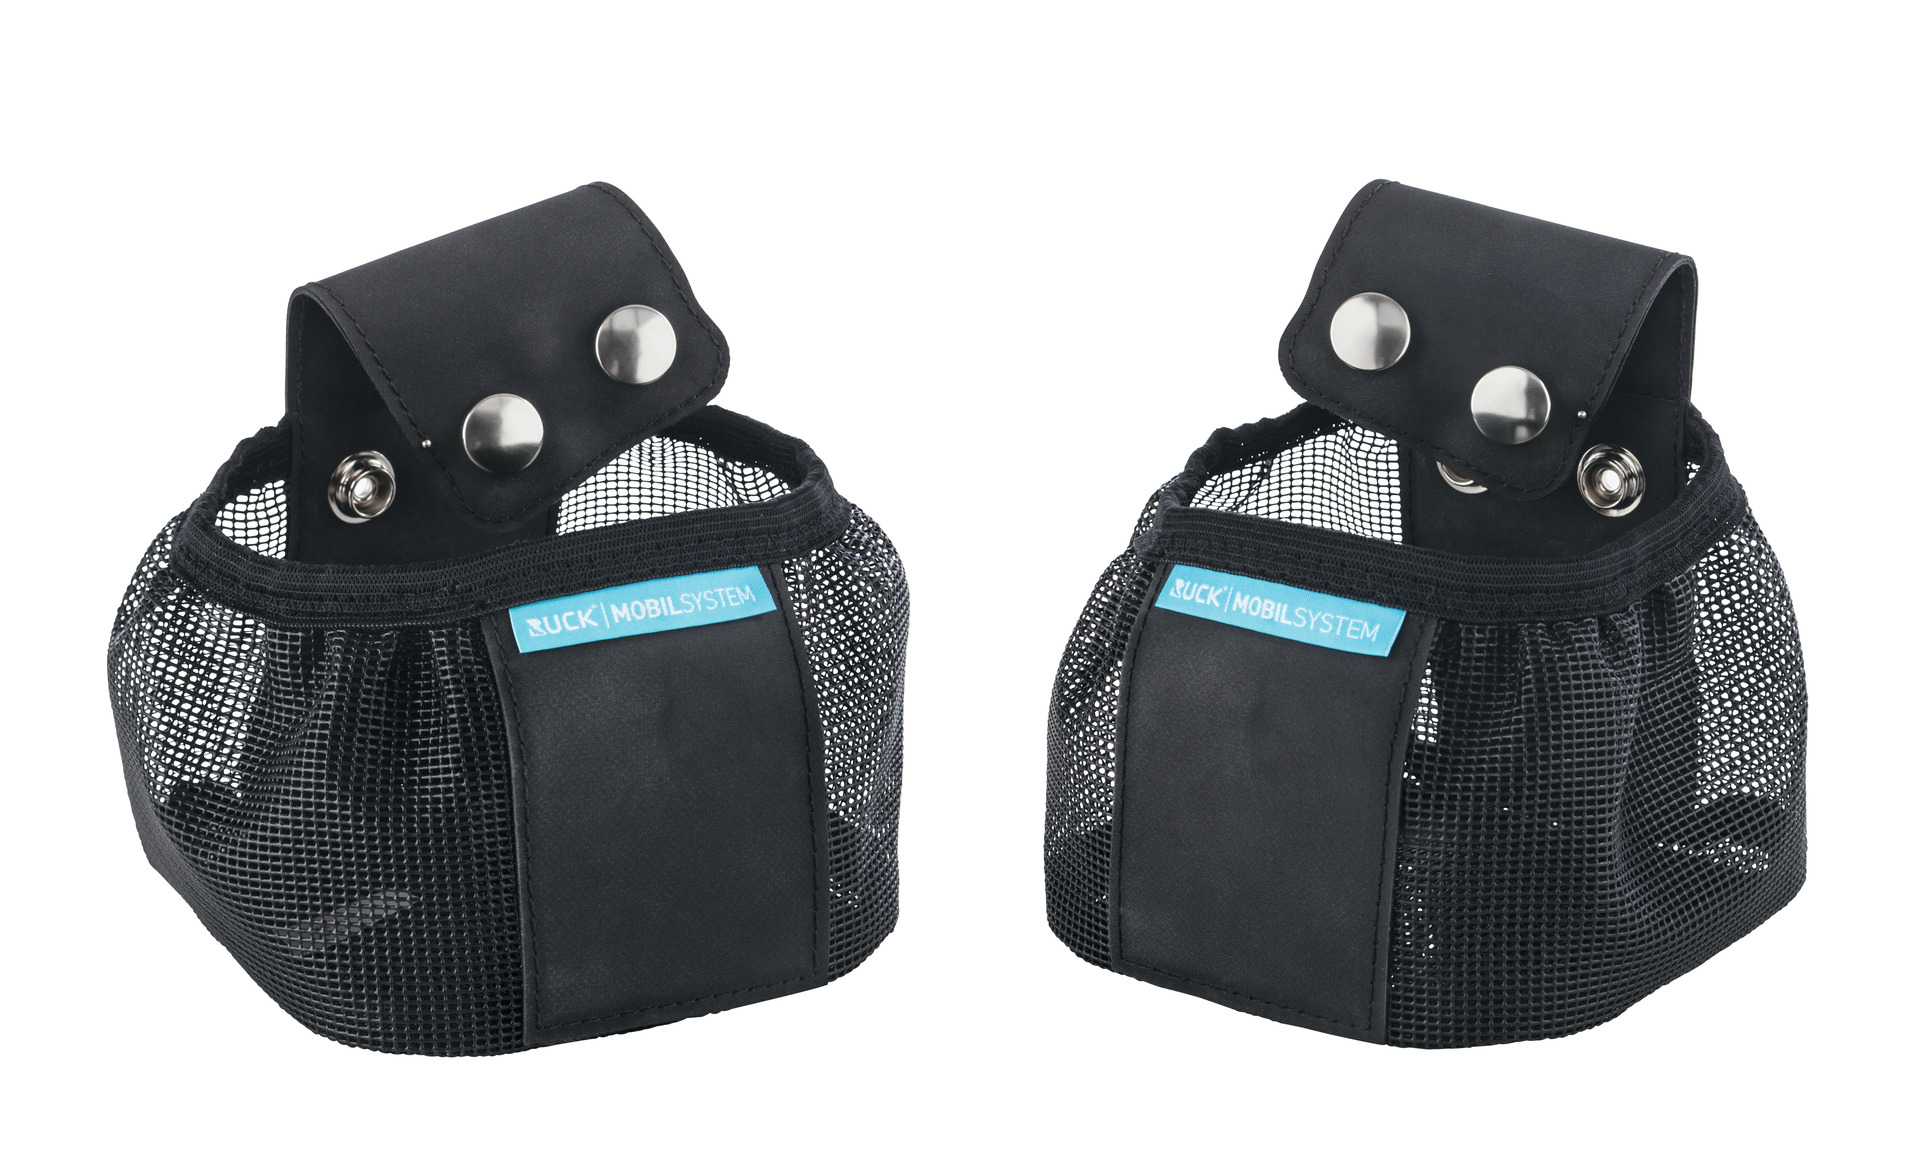 Πλευρικές τσέπες για το Backpack μεταφοράς φορητού εξοπλισμού Podolog Nova 3/3S, Eco/One